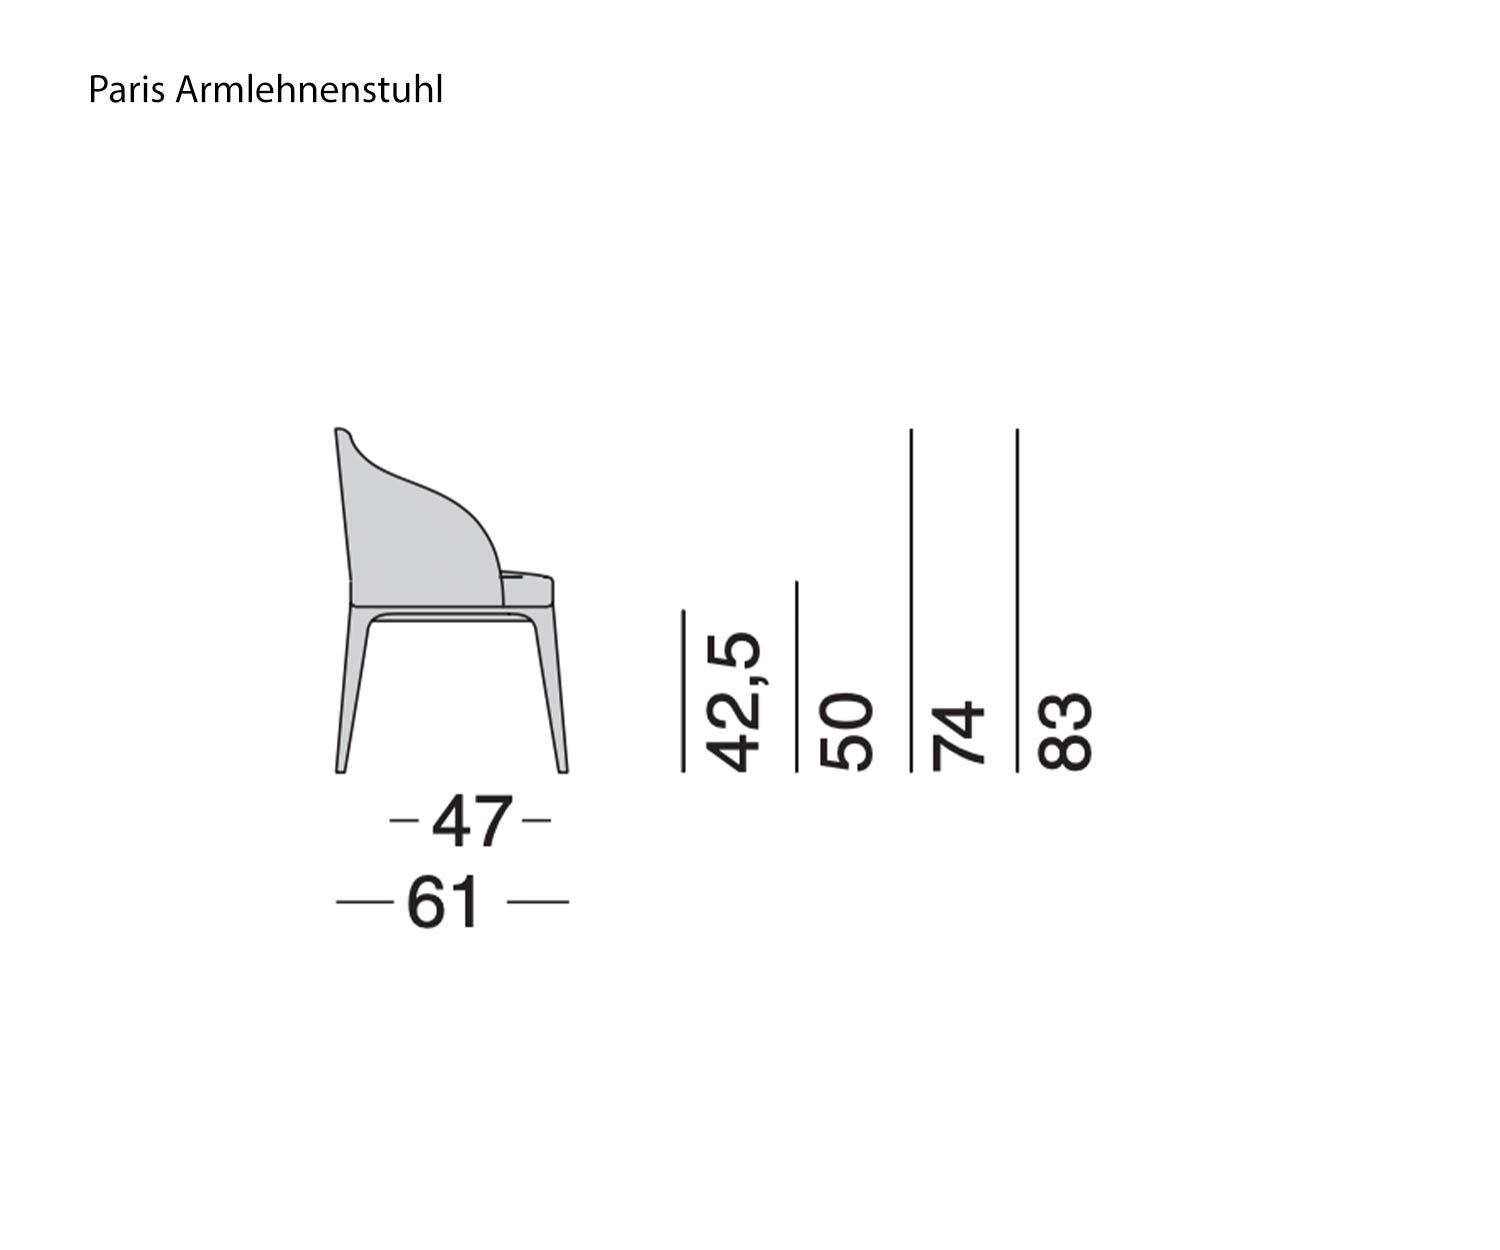 Marelli Paris Armchair Sketch Dimensions Sizes Sizes